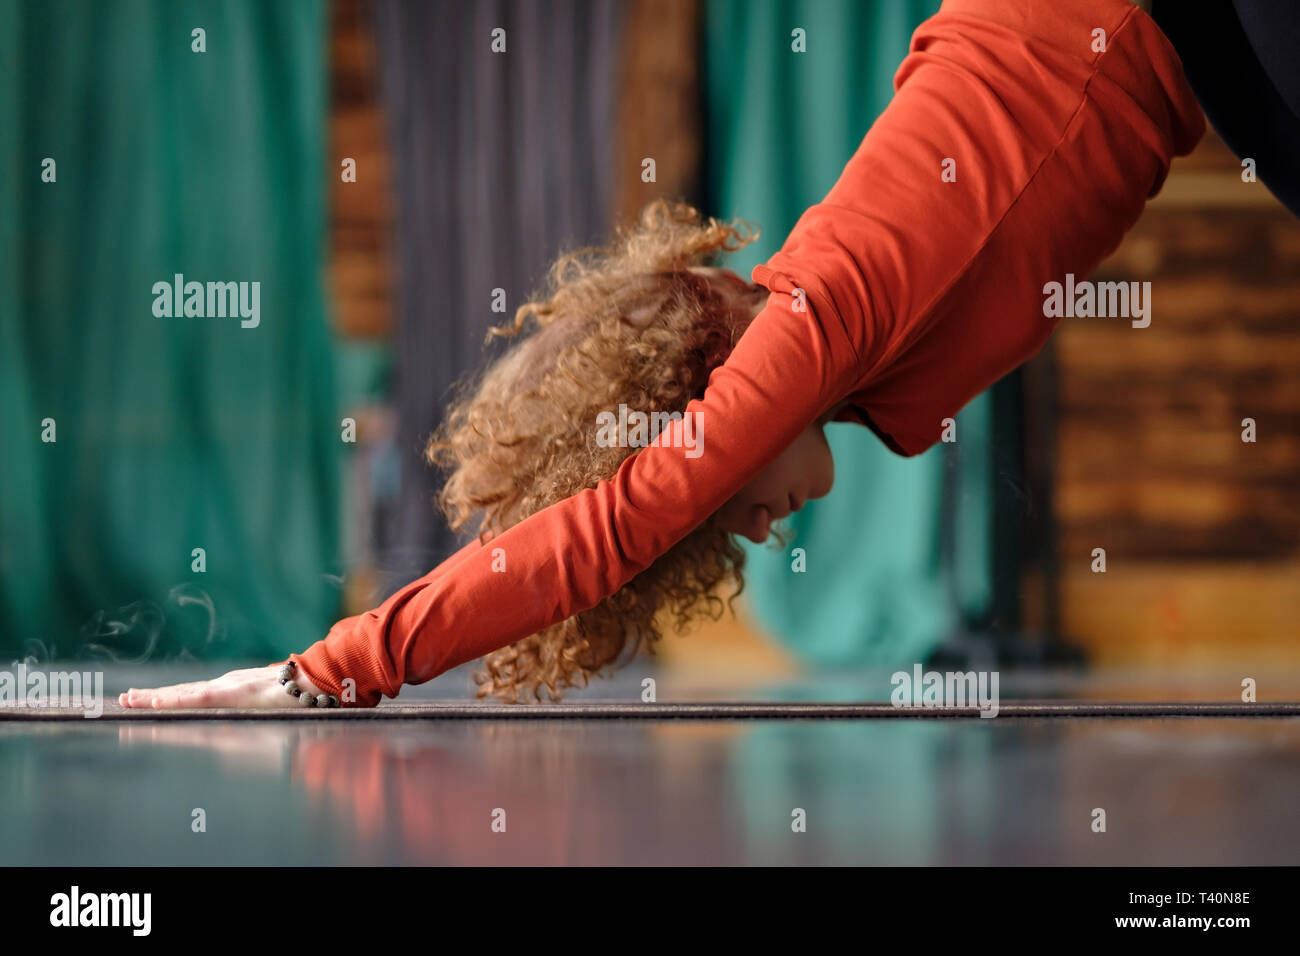 woman practicing yoga Downward facing dog exercise, adho mukha svanasana pose Stock Photo